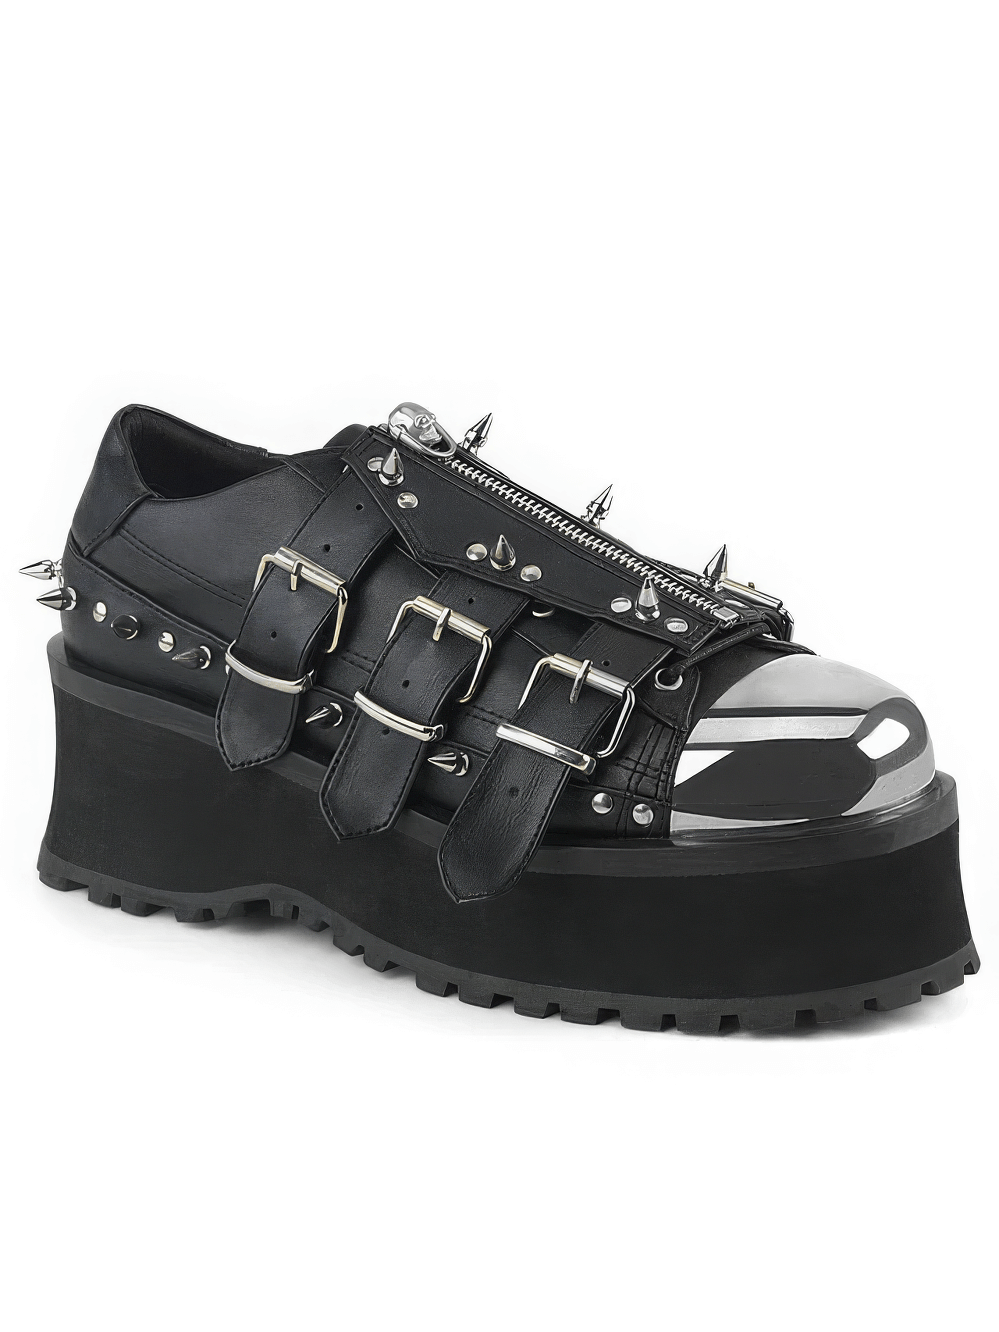 DEMONIA Gothic Platform Shoes with Chrome Toe Cap